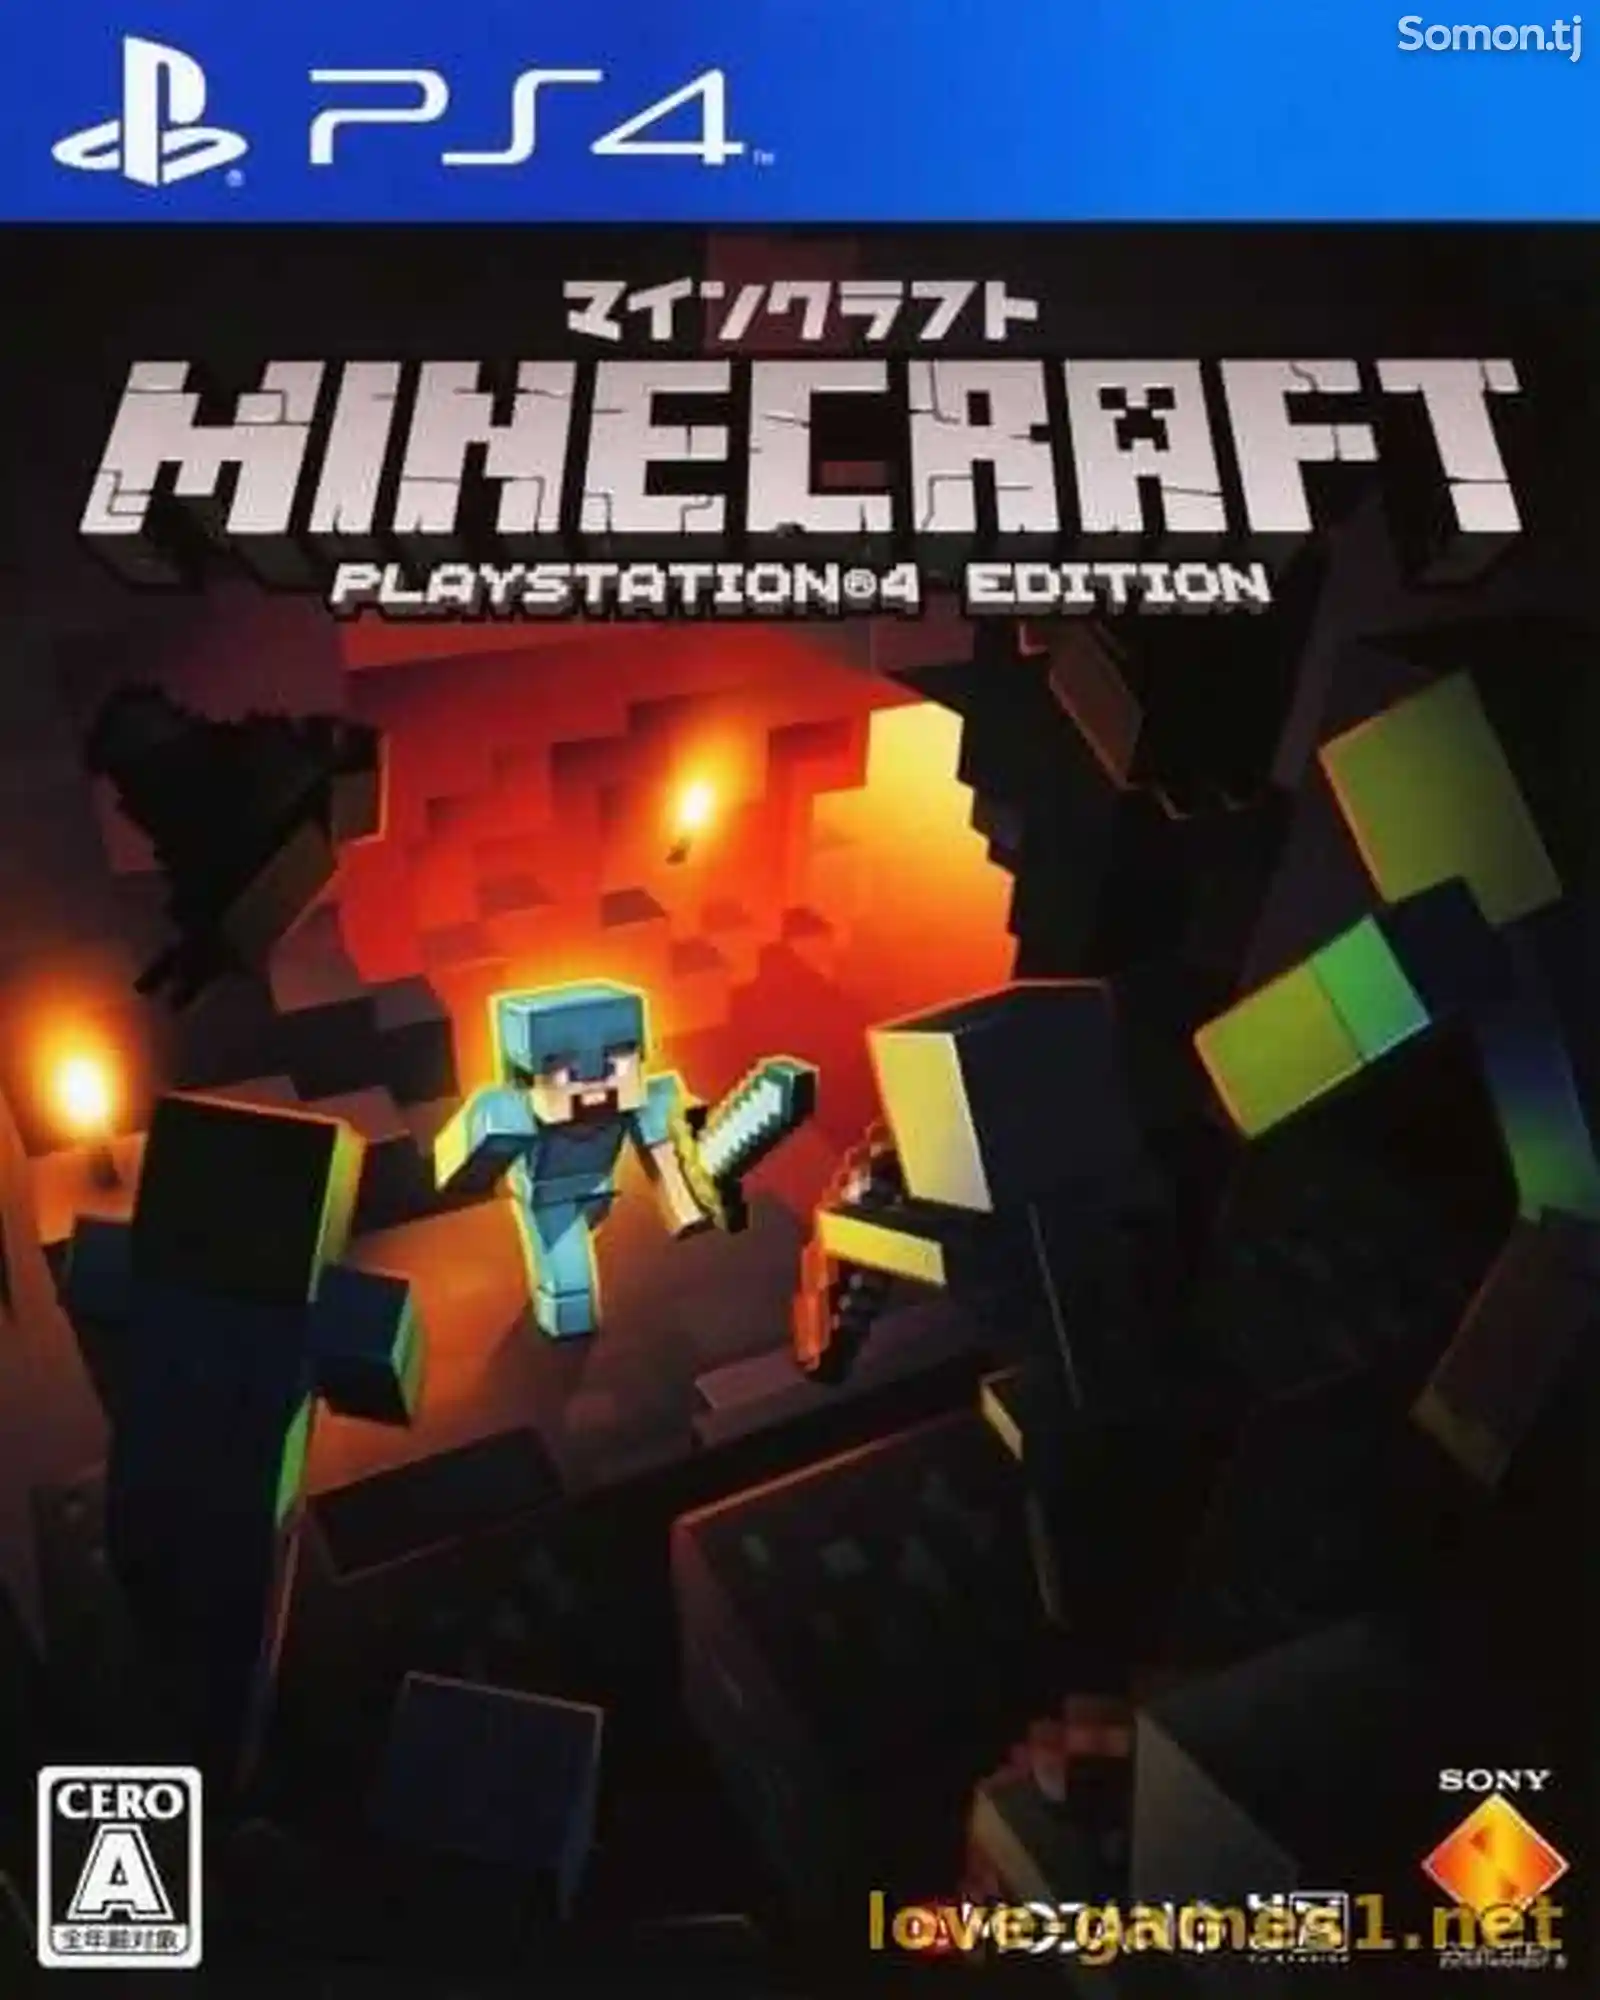 Игра Minecraft PlayStation 4 Edition для PS4-1